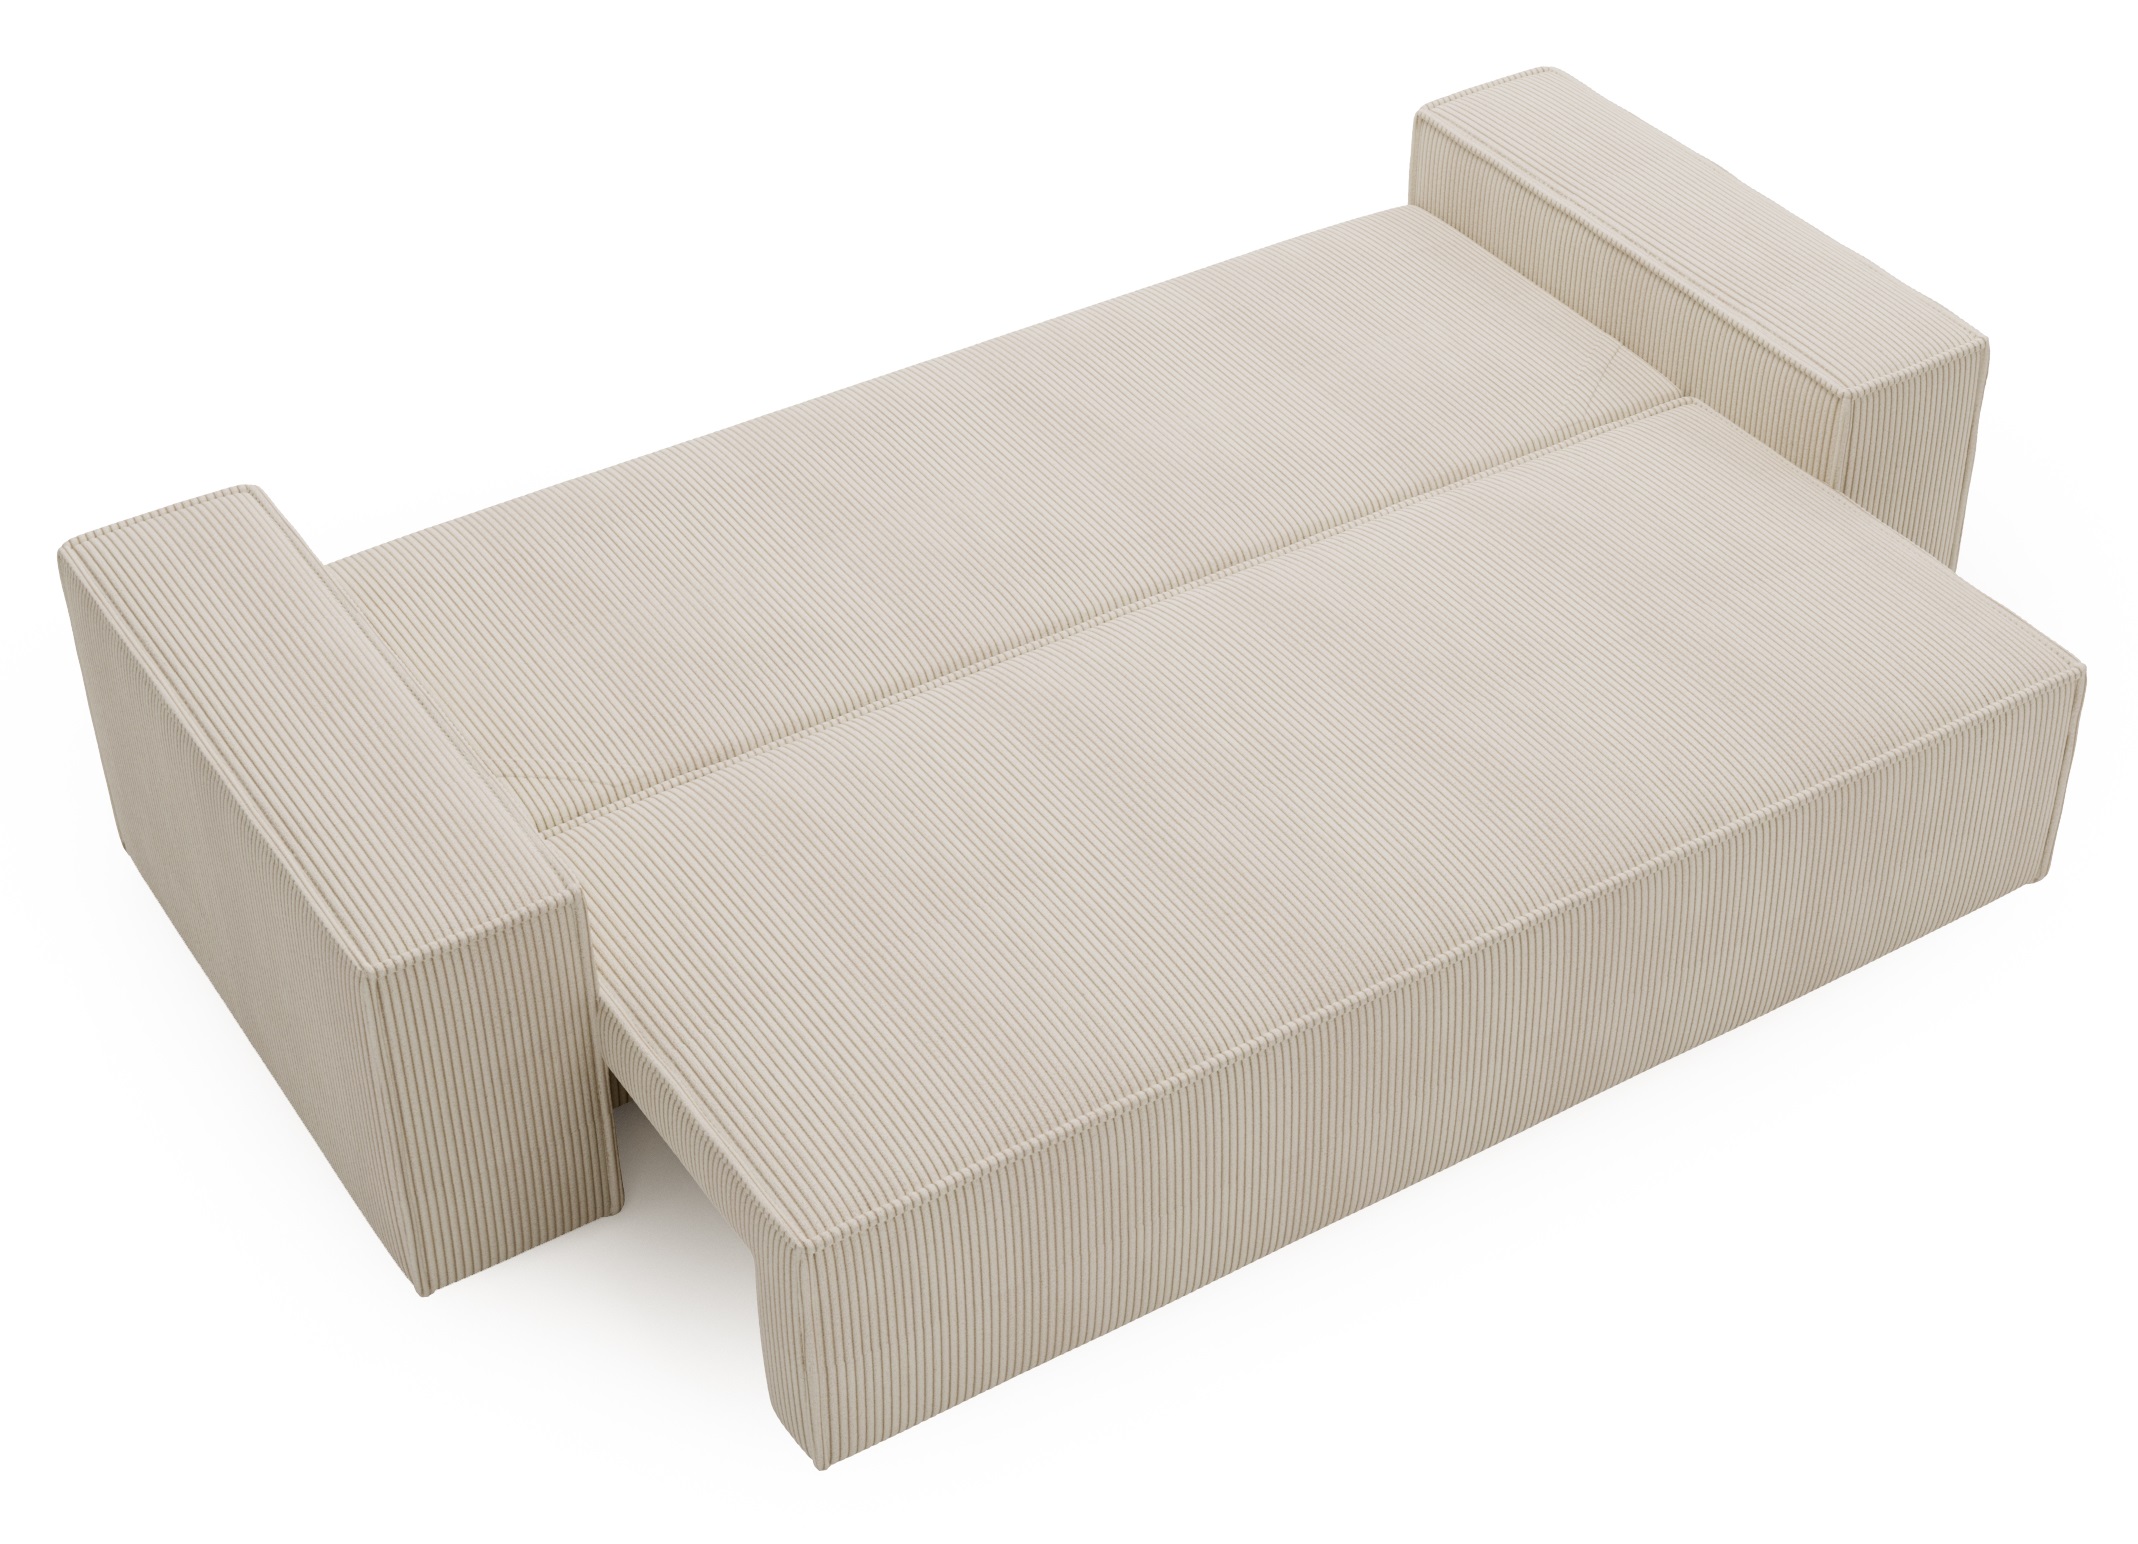 AGA Kanapa sztruks beżowy rozkładana sofa - zdjęcie produktu